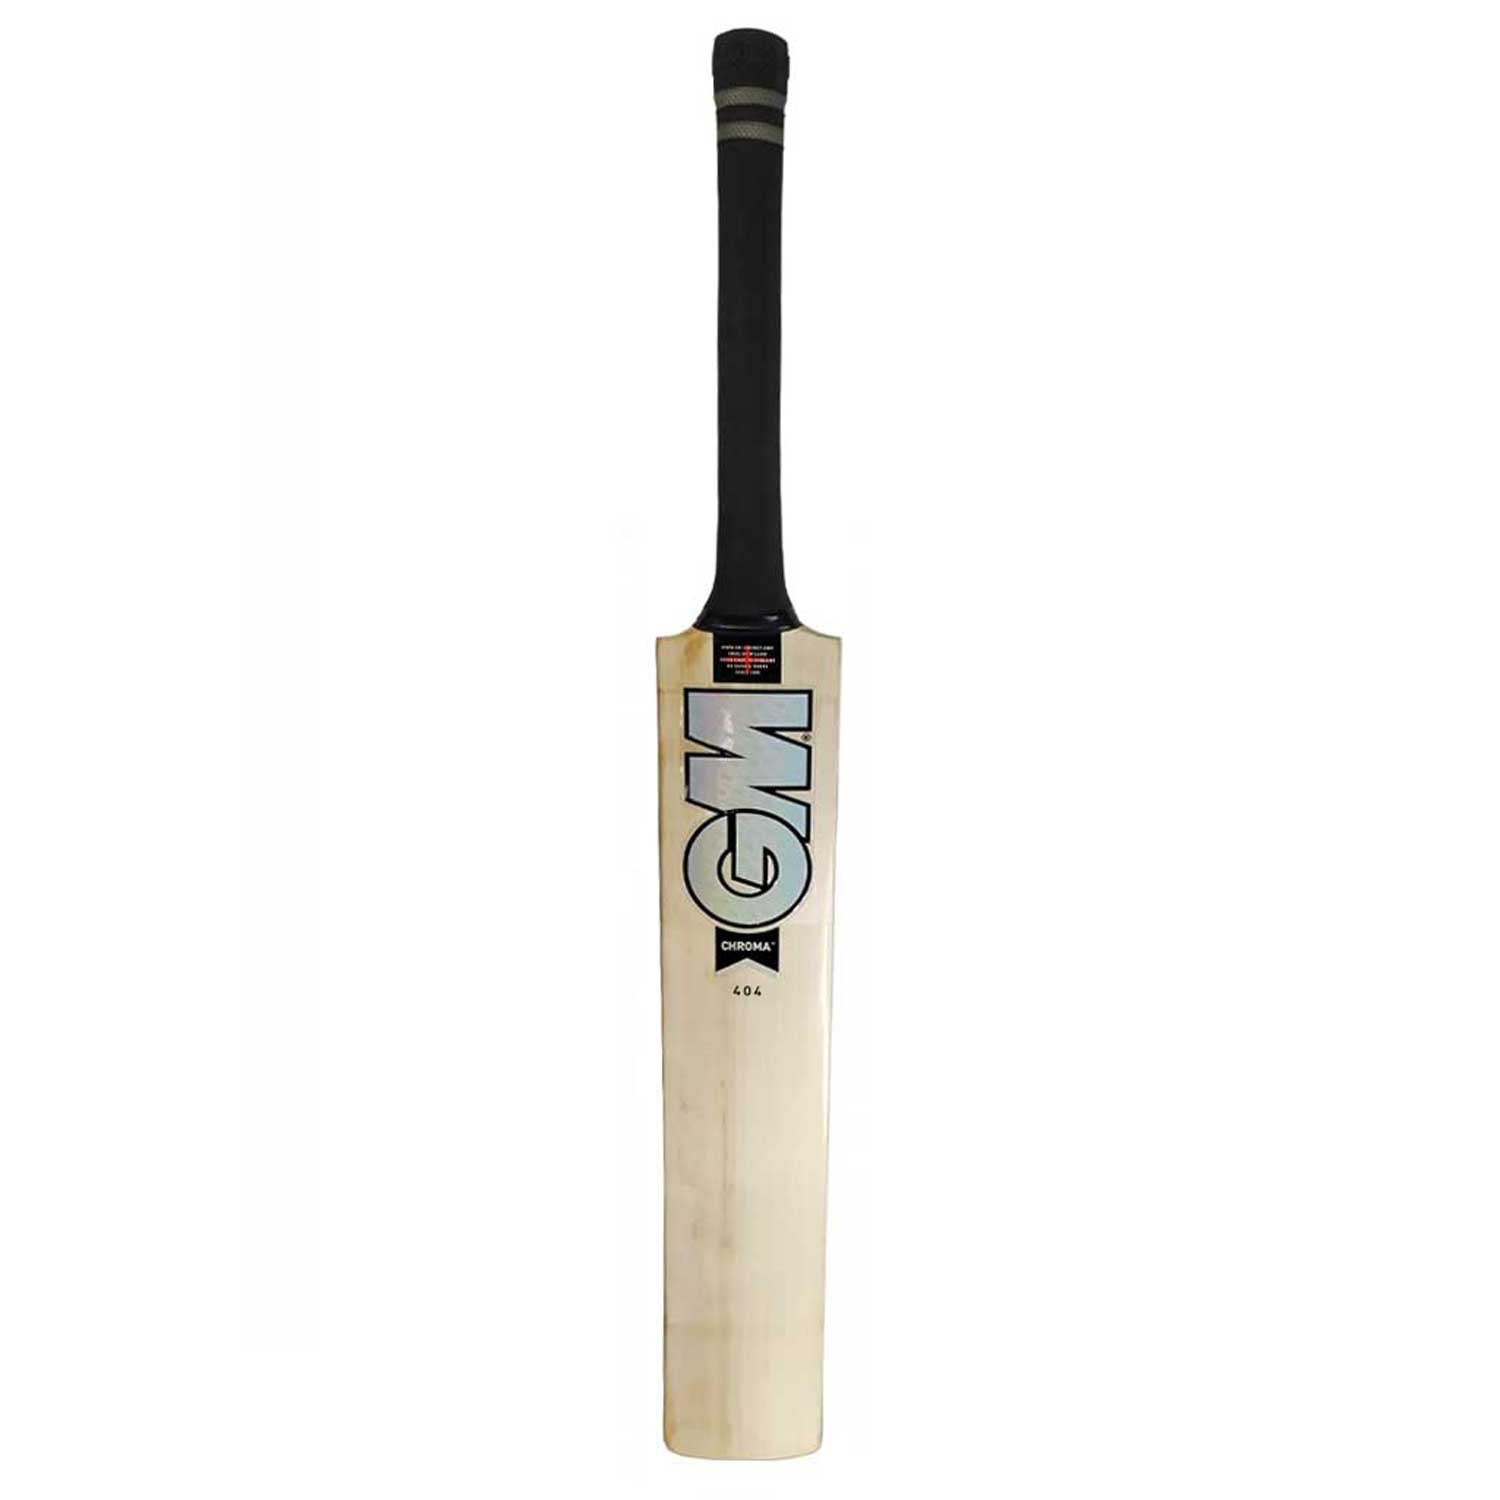 Gunn & Moore Chroma 404 Junior Cricket Bat